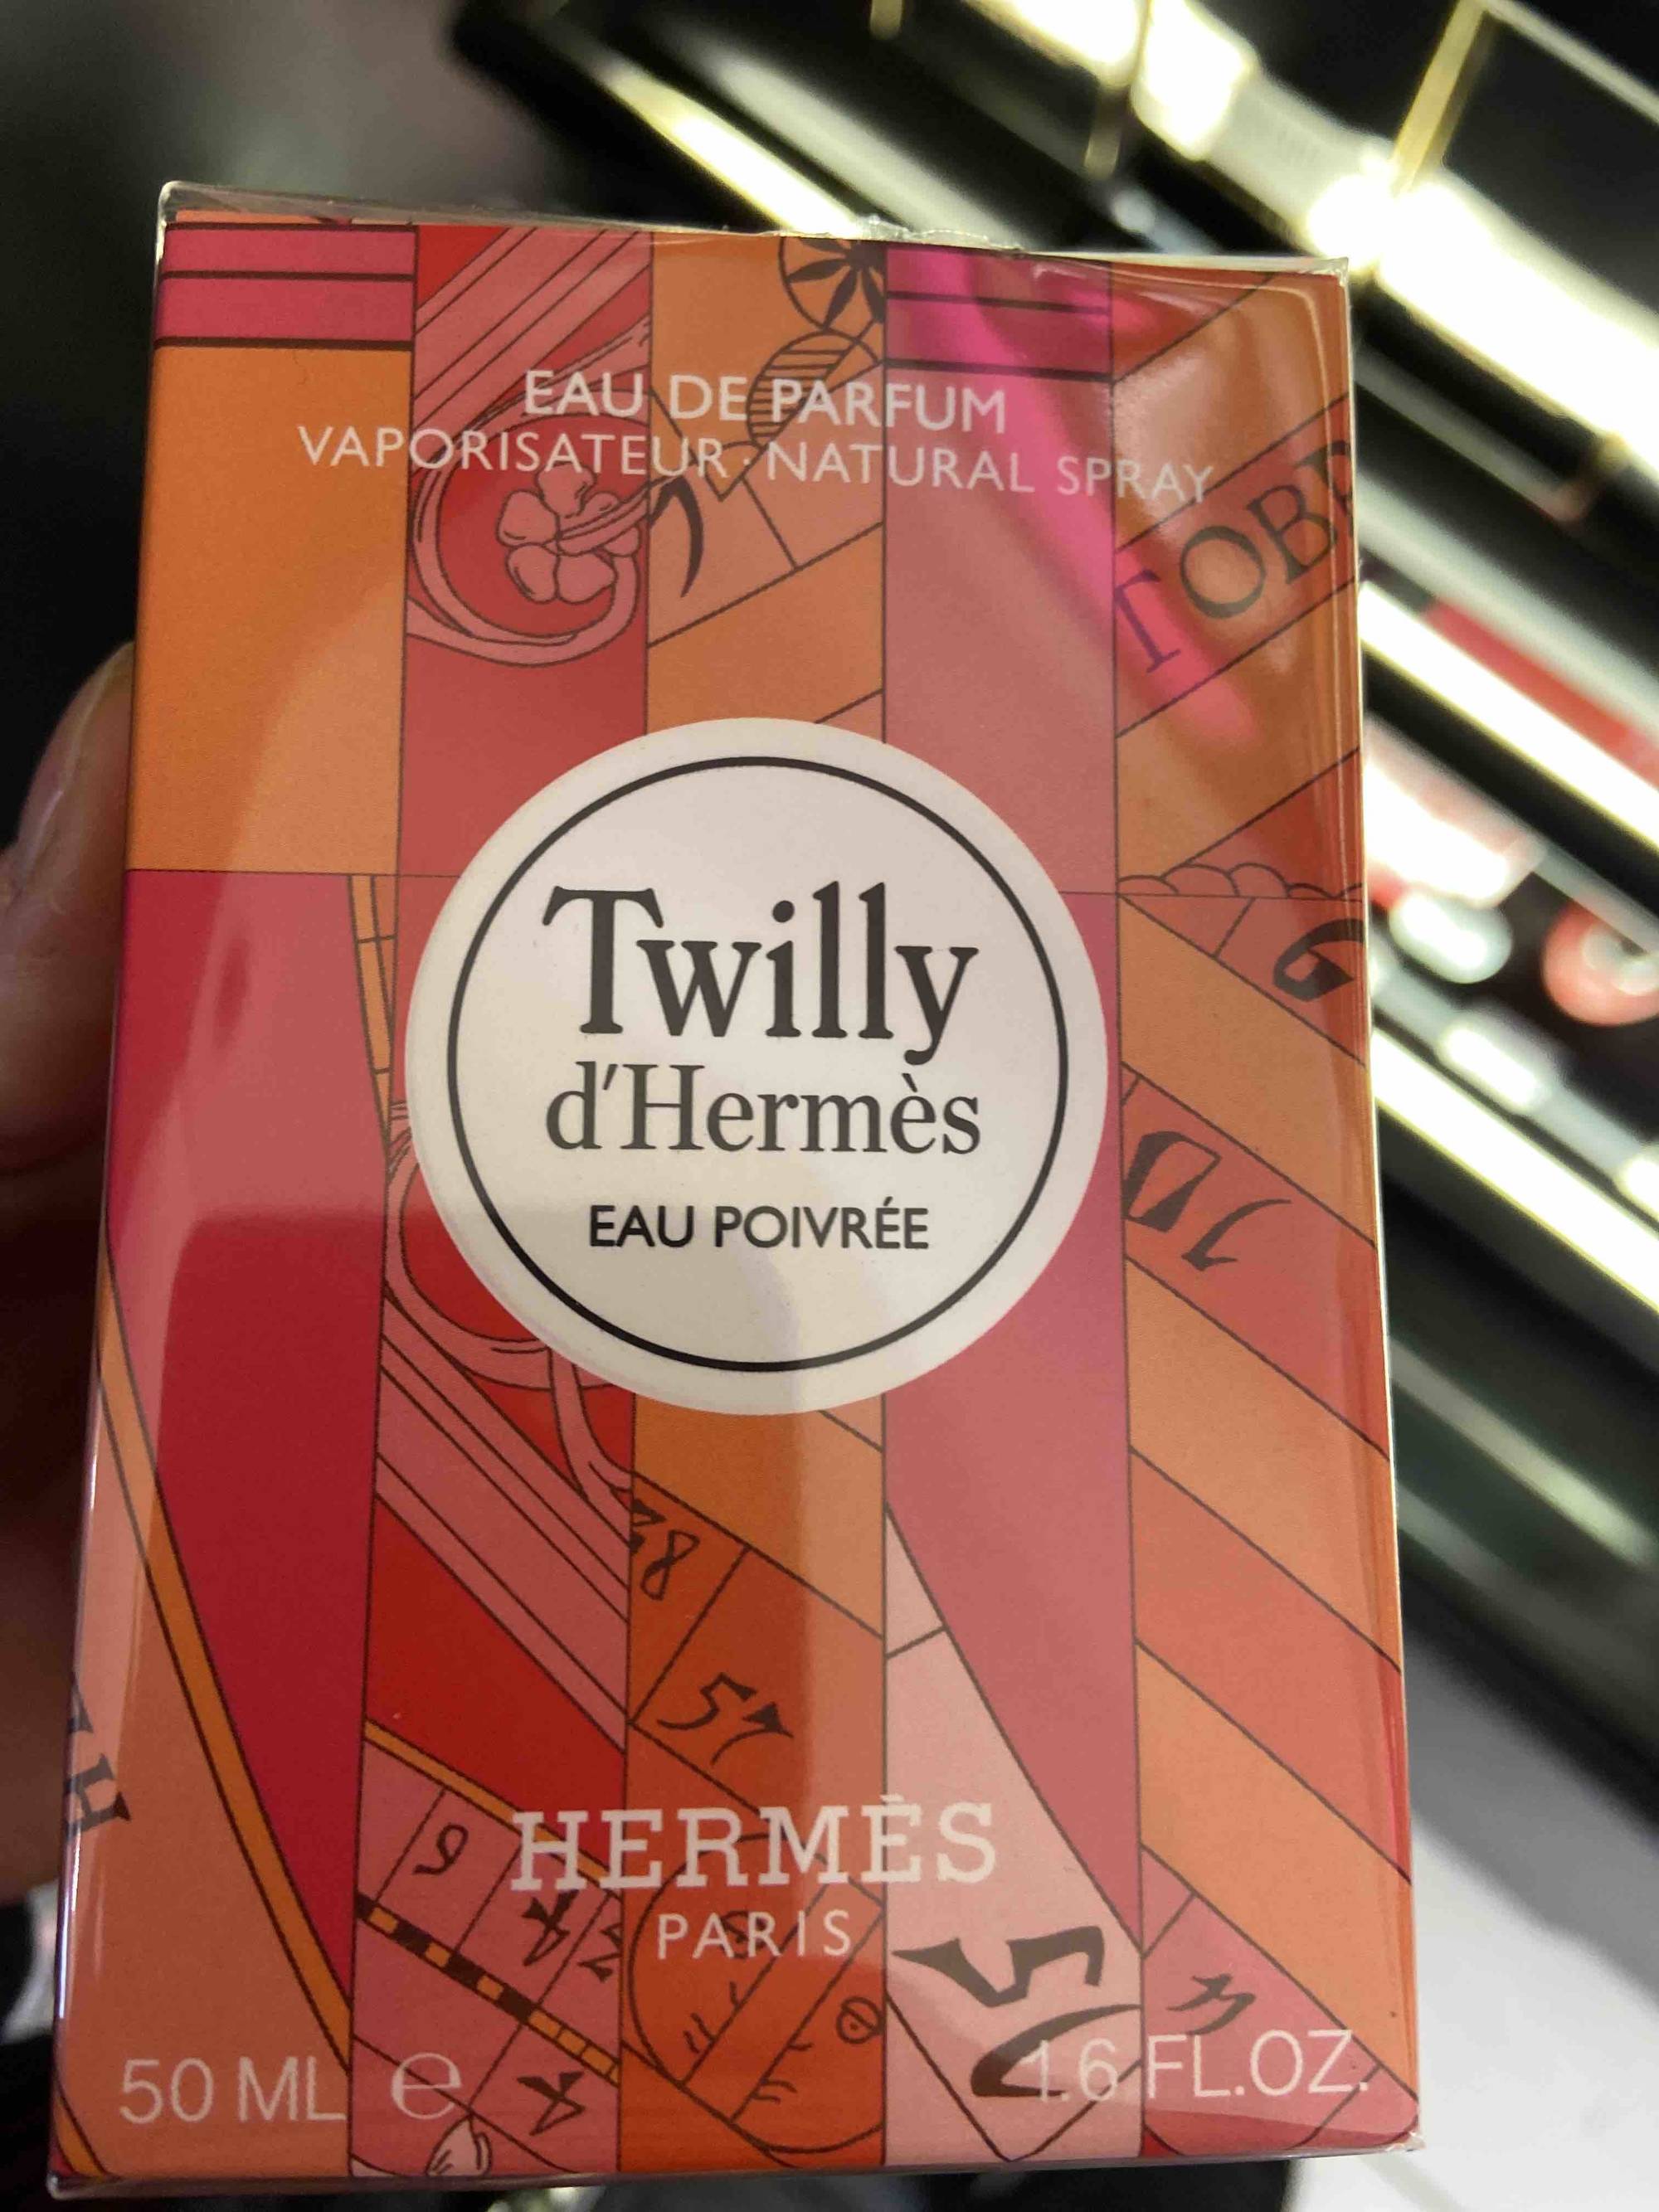 HERMES - Twilly d'hermès eau poivrée - Eau de parfum